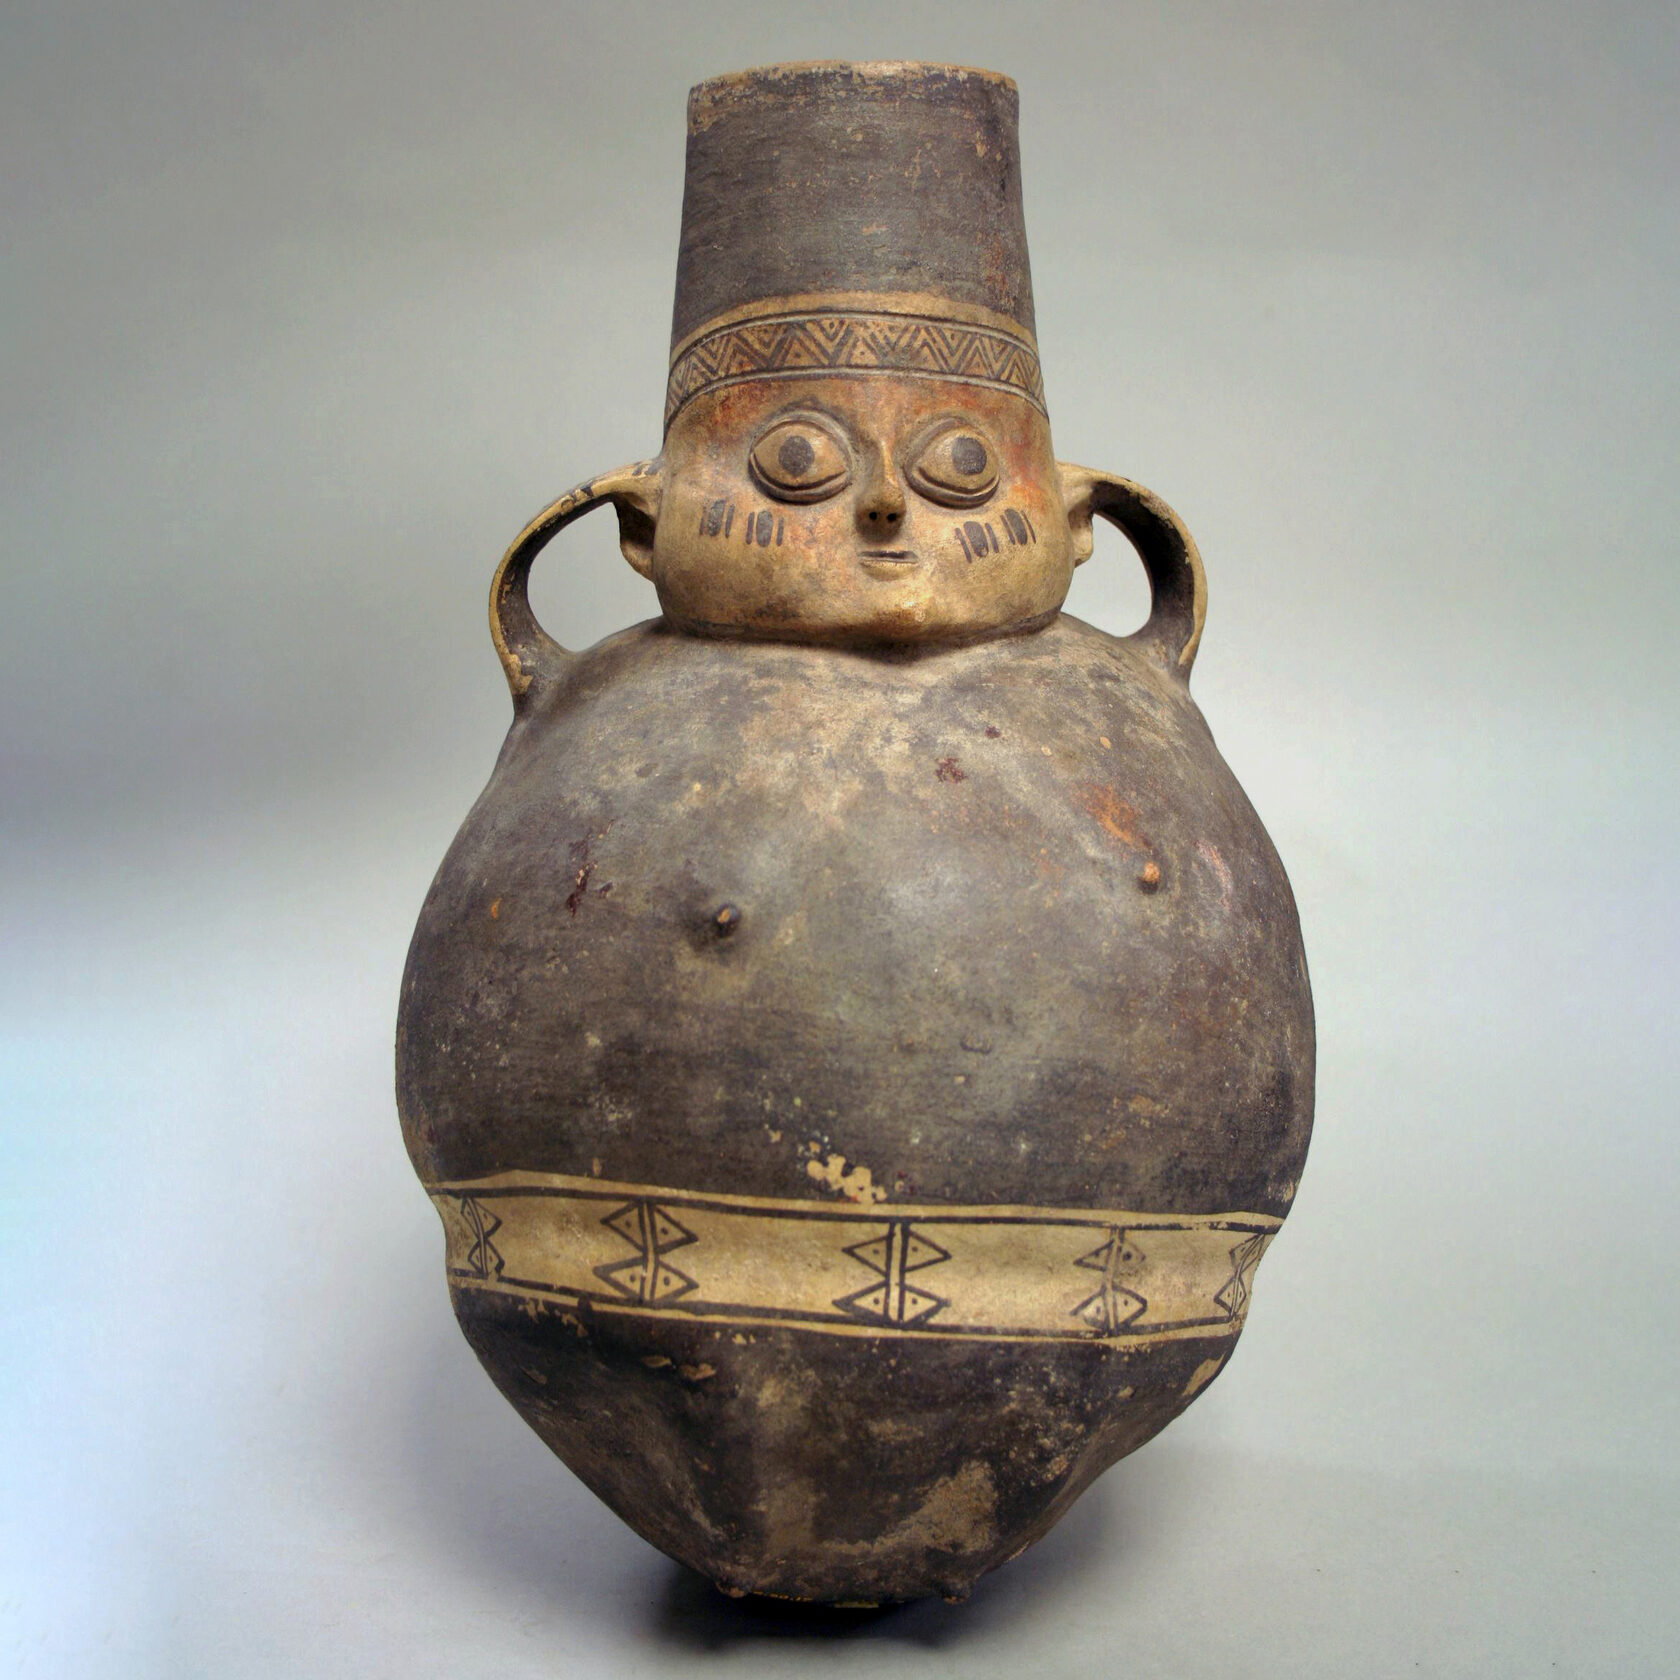 Фигурная бутыль, культура Чанкай (XII-XIV вв. н.э.). Коллекция The Metropolitan Museum of Art.